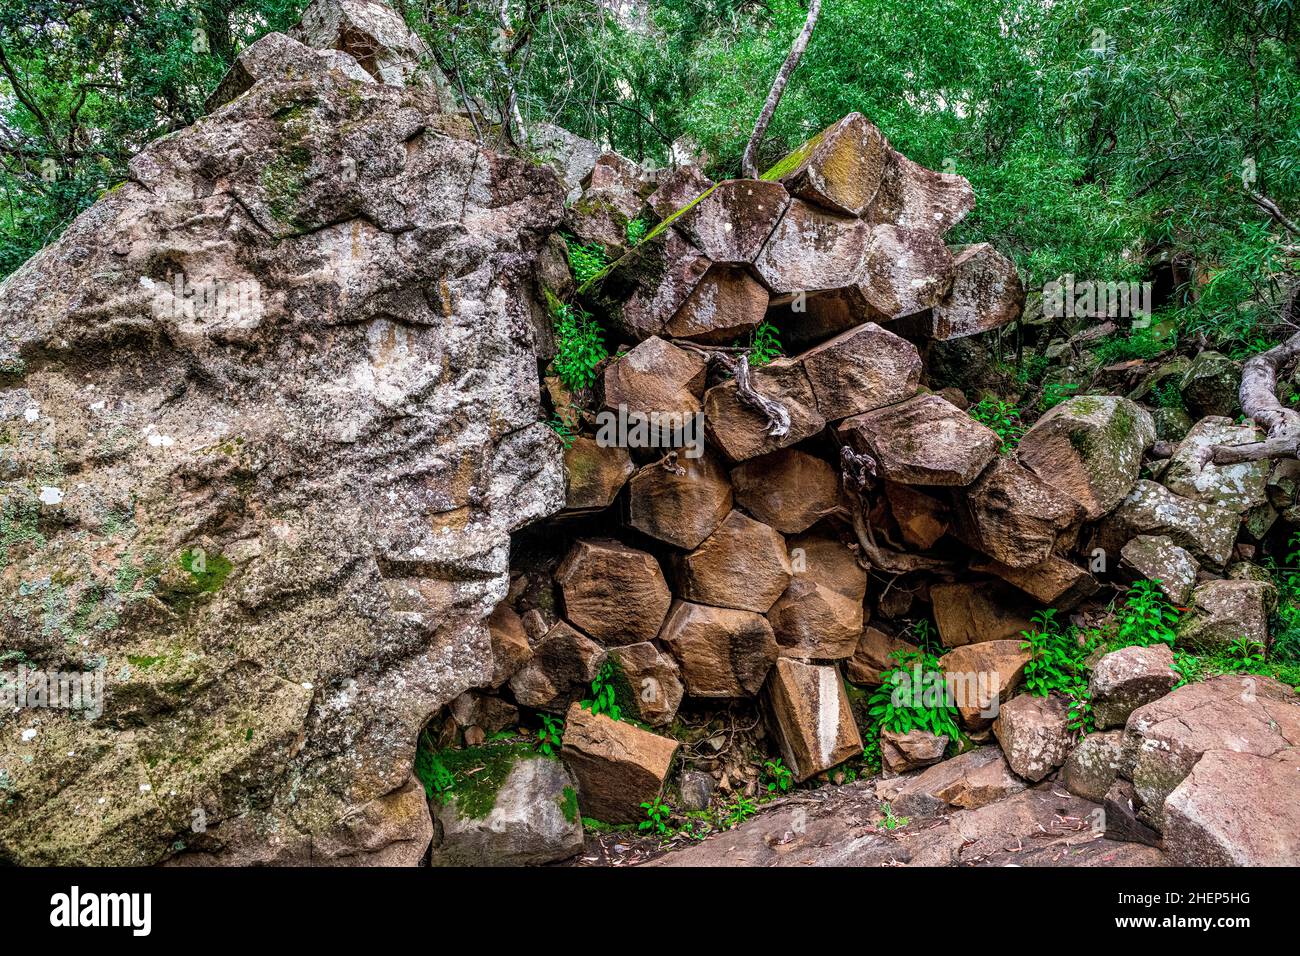 Le rocce segate sono una parete torreggiante di pipe pentagonali di basalto. Un iconico ricordo del passato vulcanico di Kaputar, situato nel Parco Nazionale del Monte Kaputar. Foto Stock